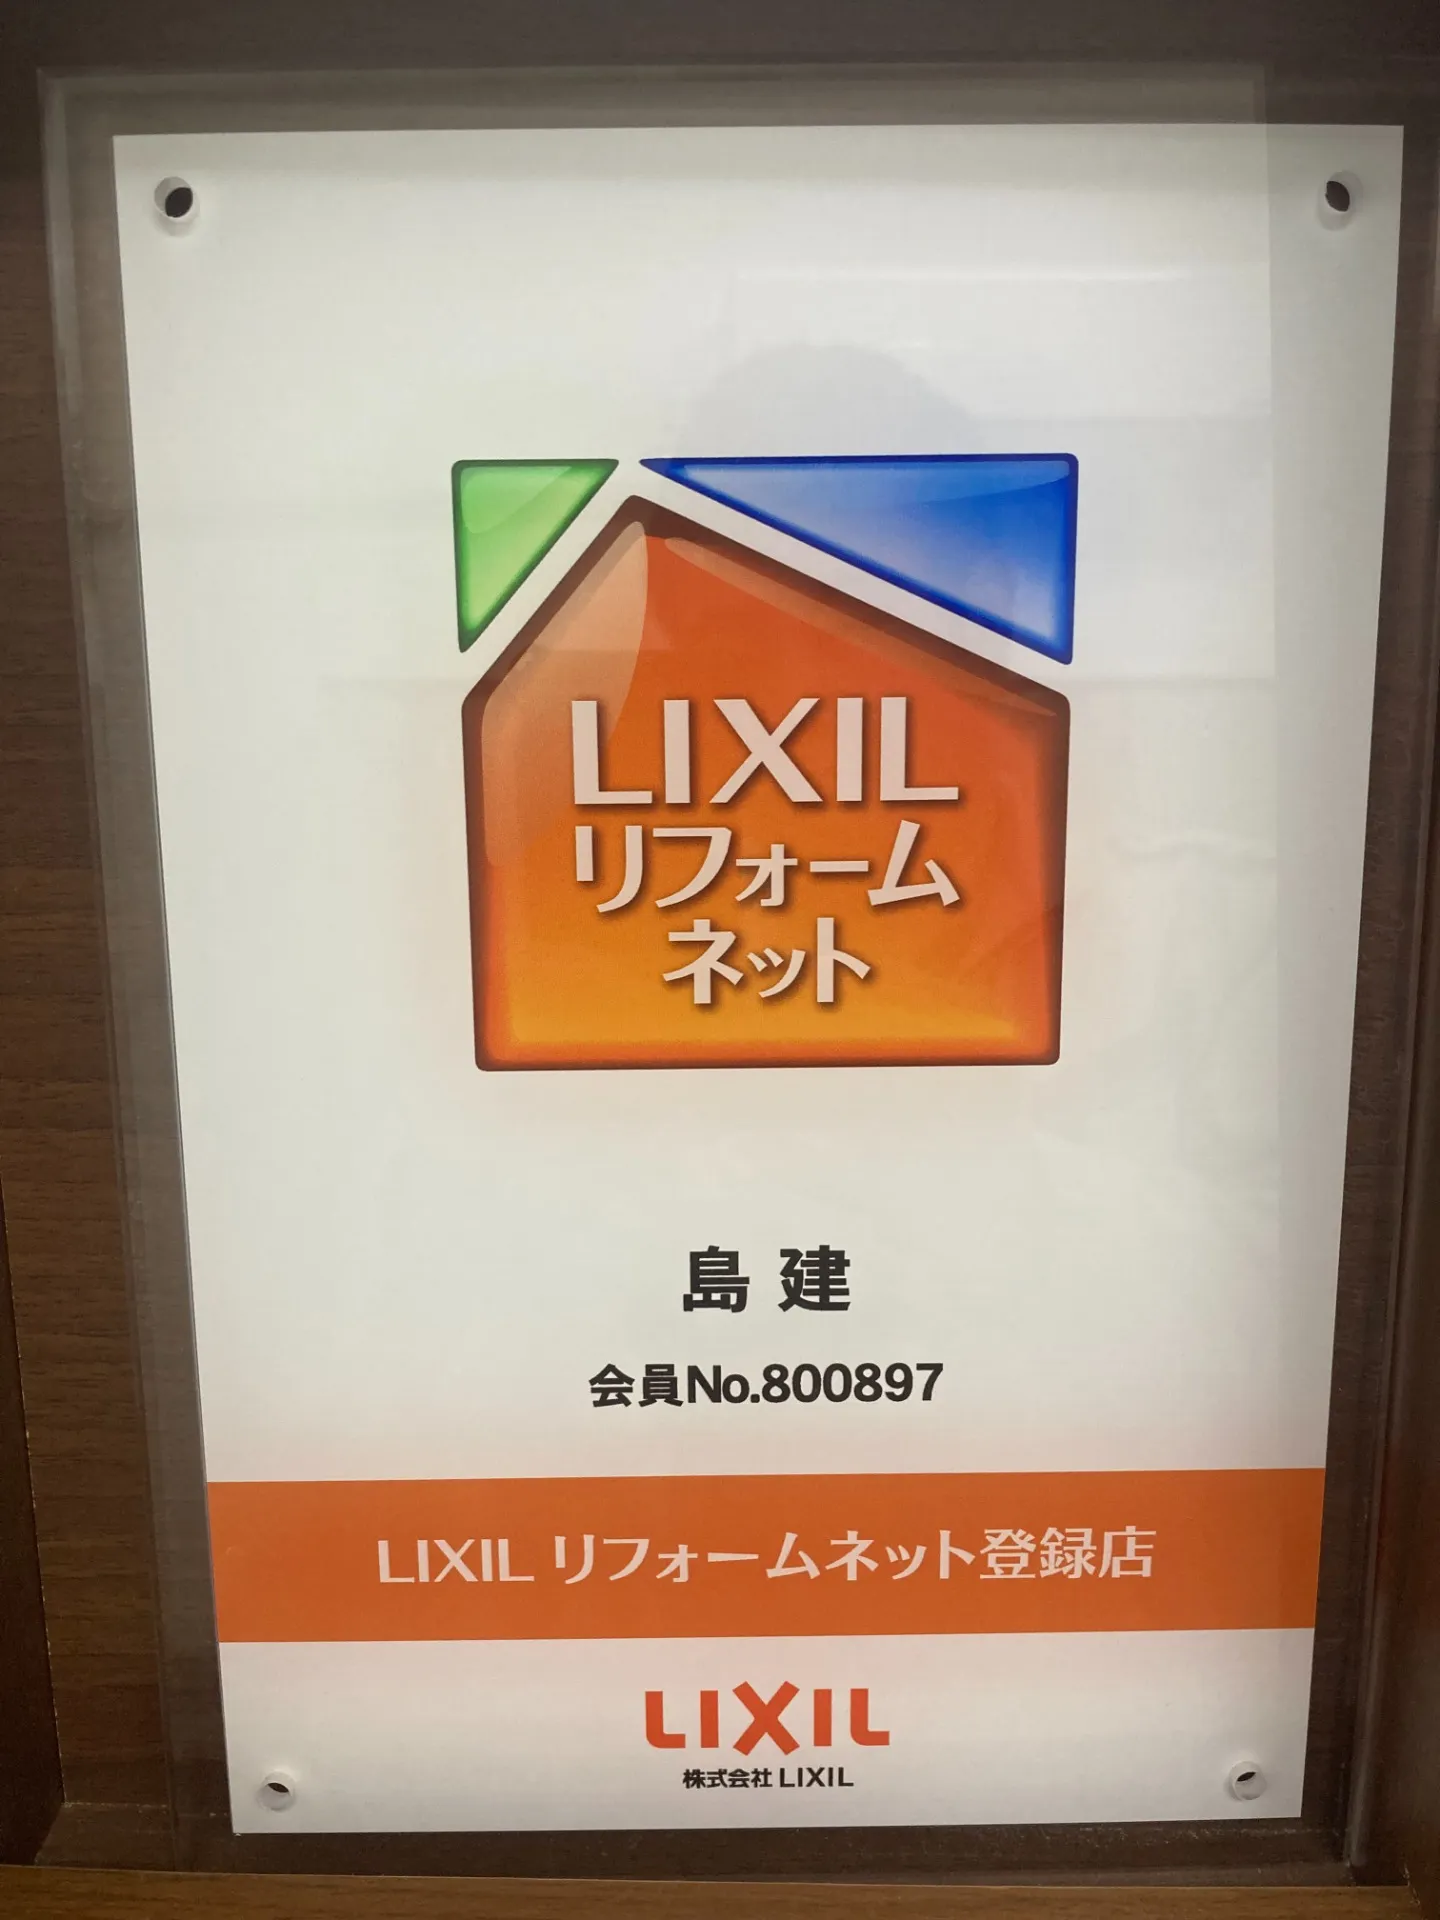 LIXIL　リフォームネット（Good Living友の会）加盟					